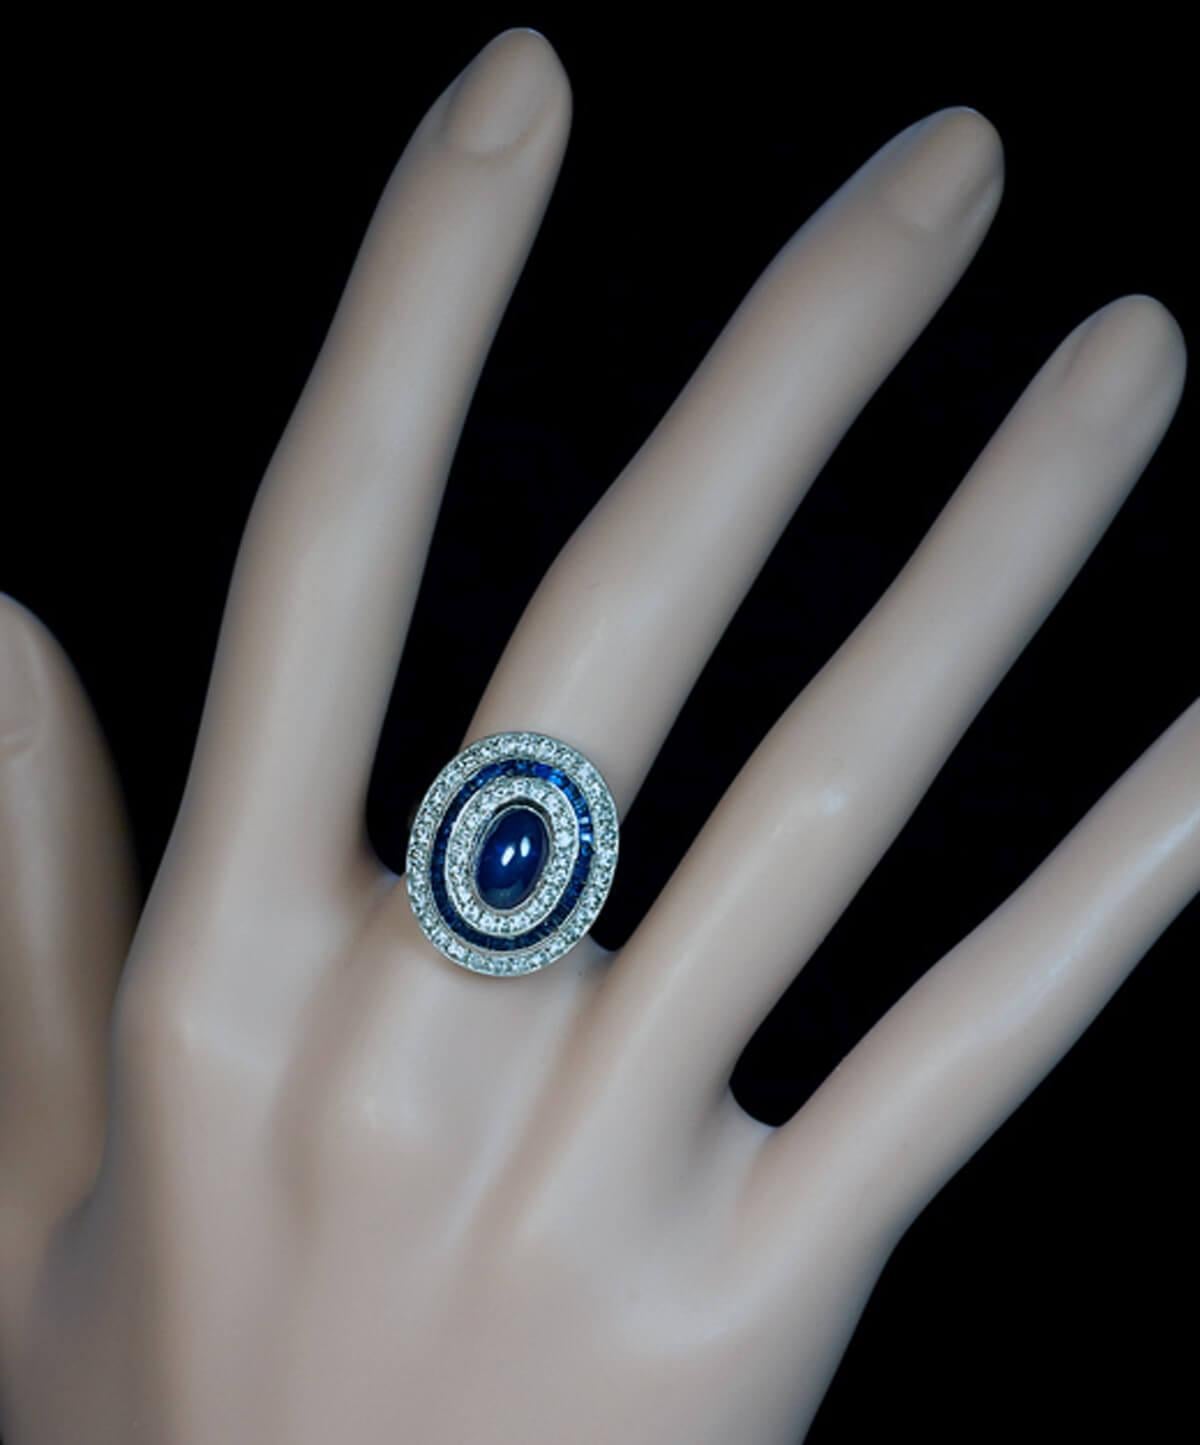 Belgique, années 1940  La bague est fabriquée à la main en or blanc 18 carats. Il est centré sur un saphir bleu taillé en cabochon, entouré de deux rangées de diamants (d'un poids total d'environ 1 carat) et d'une rangée de saphirs taillés à la